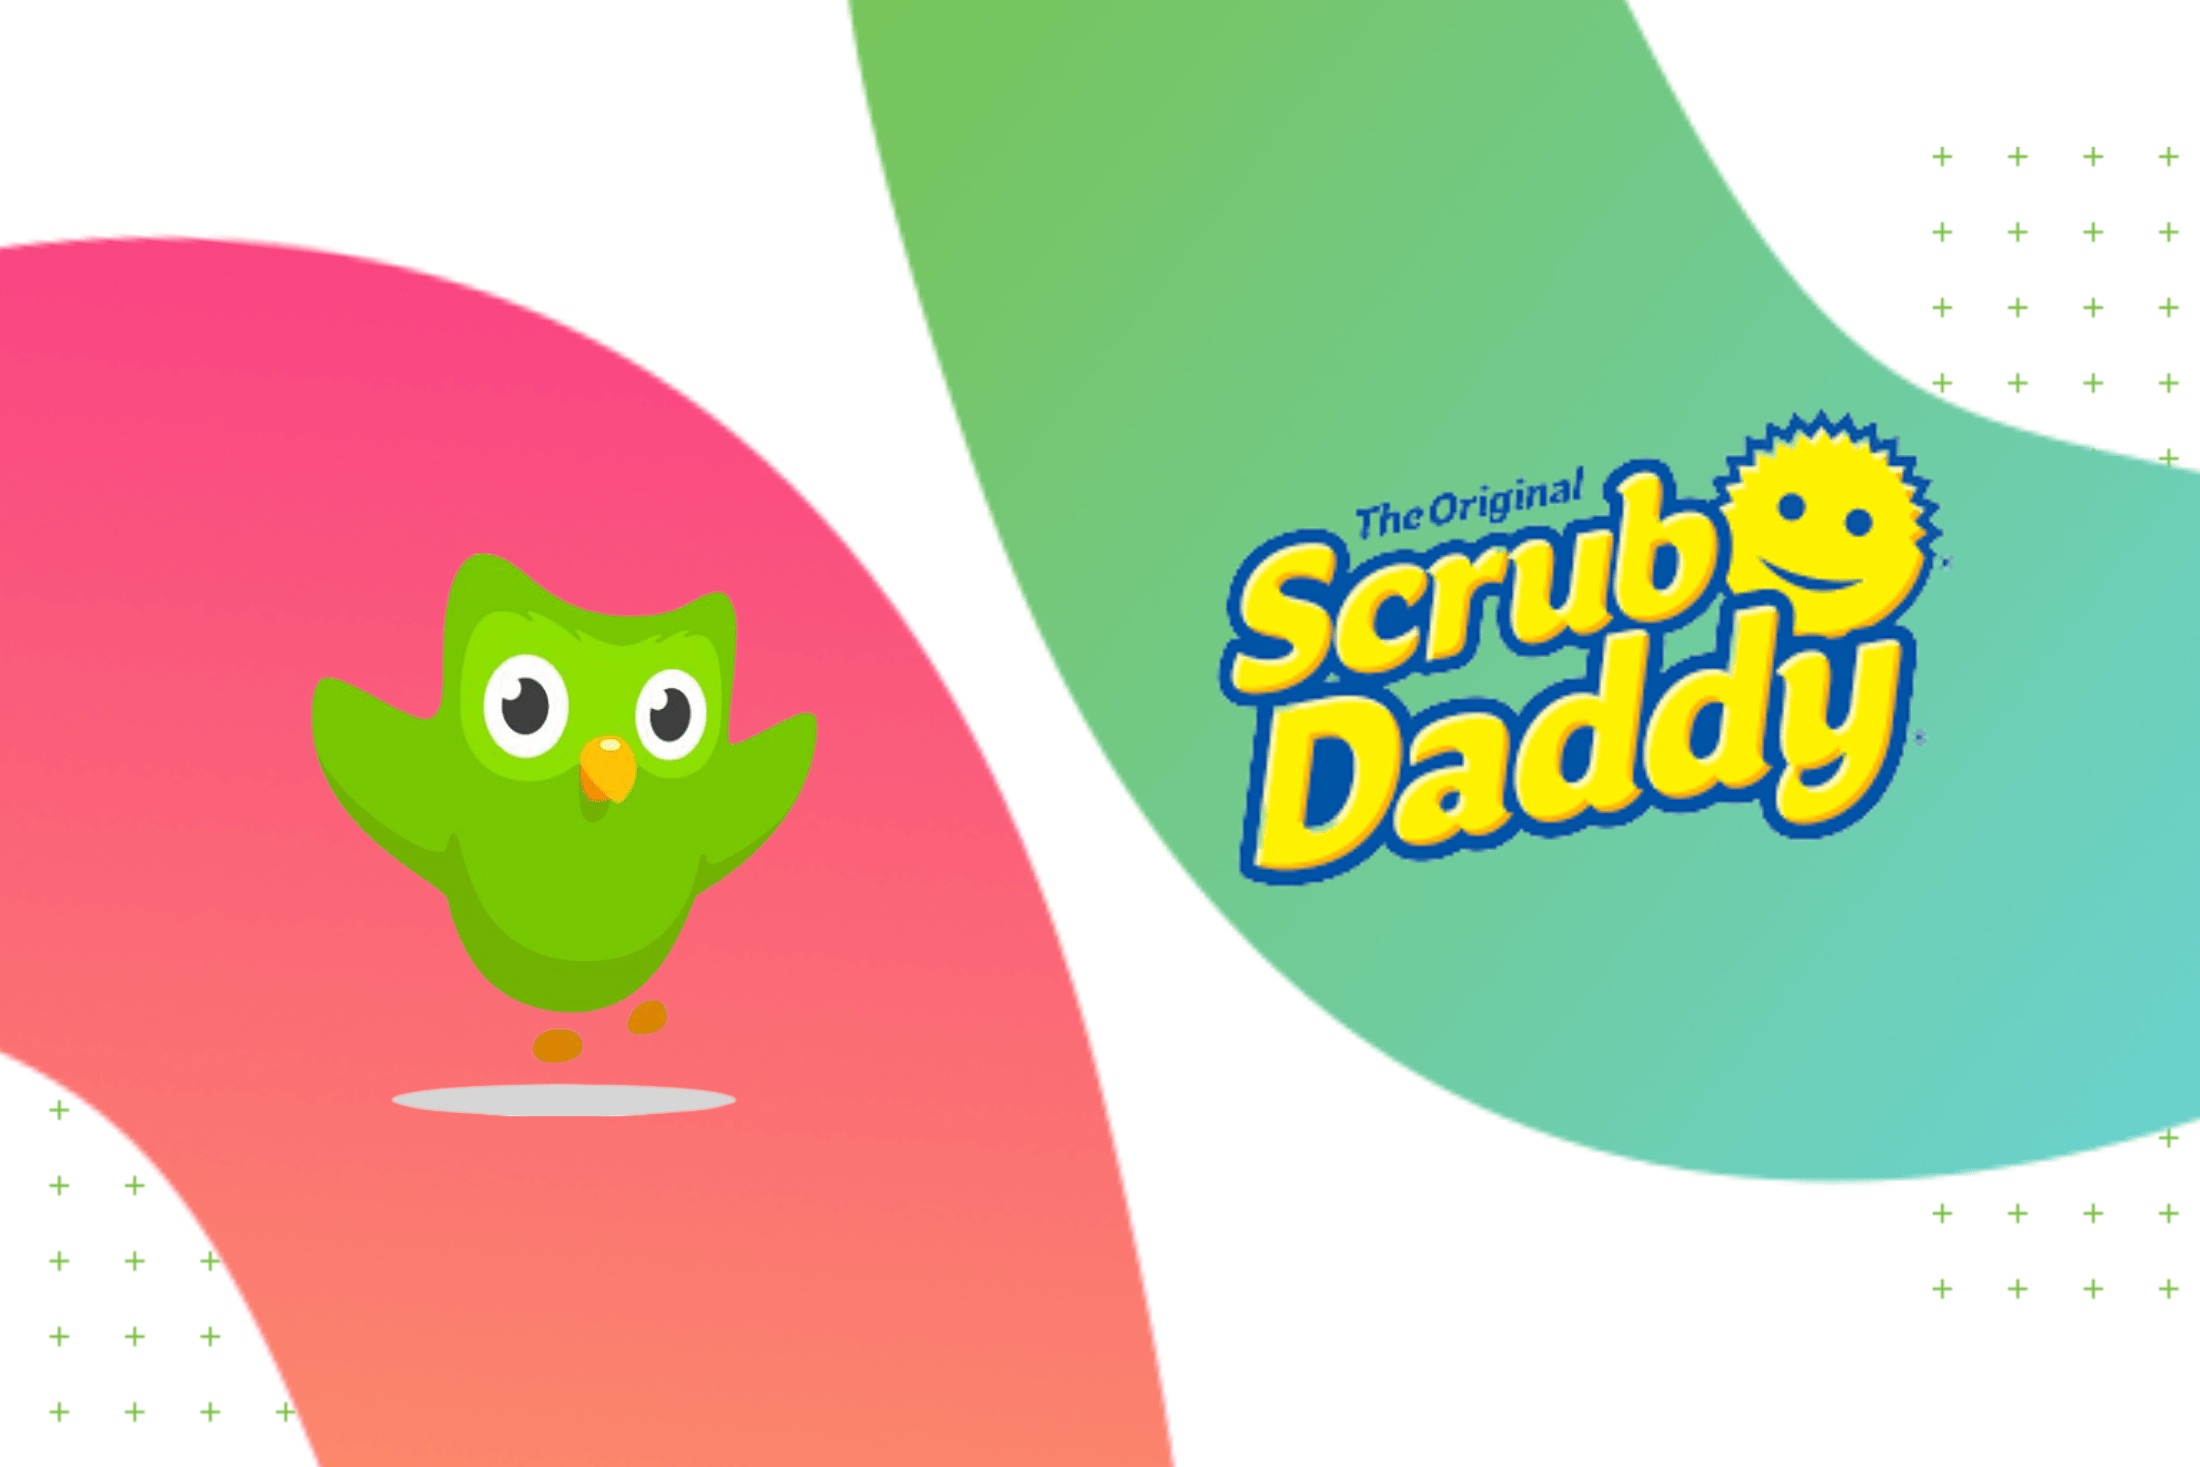 Scrub daddy duolingo sponge